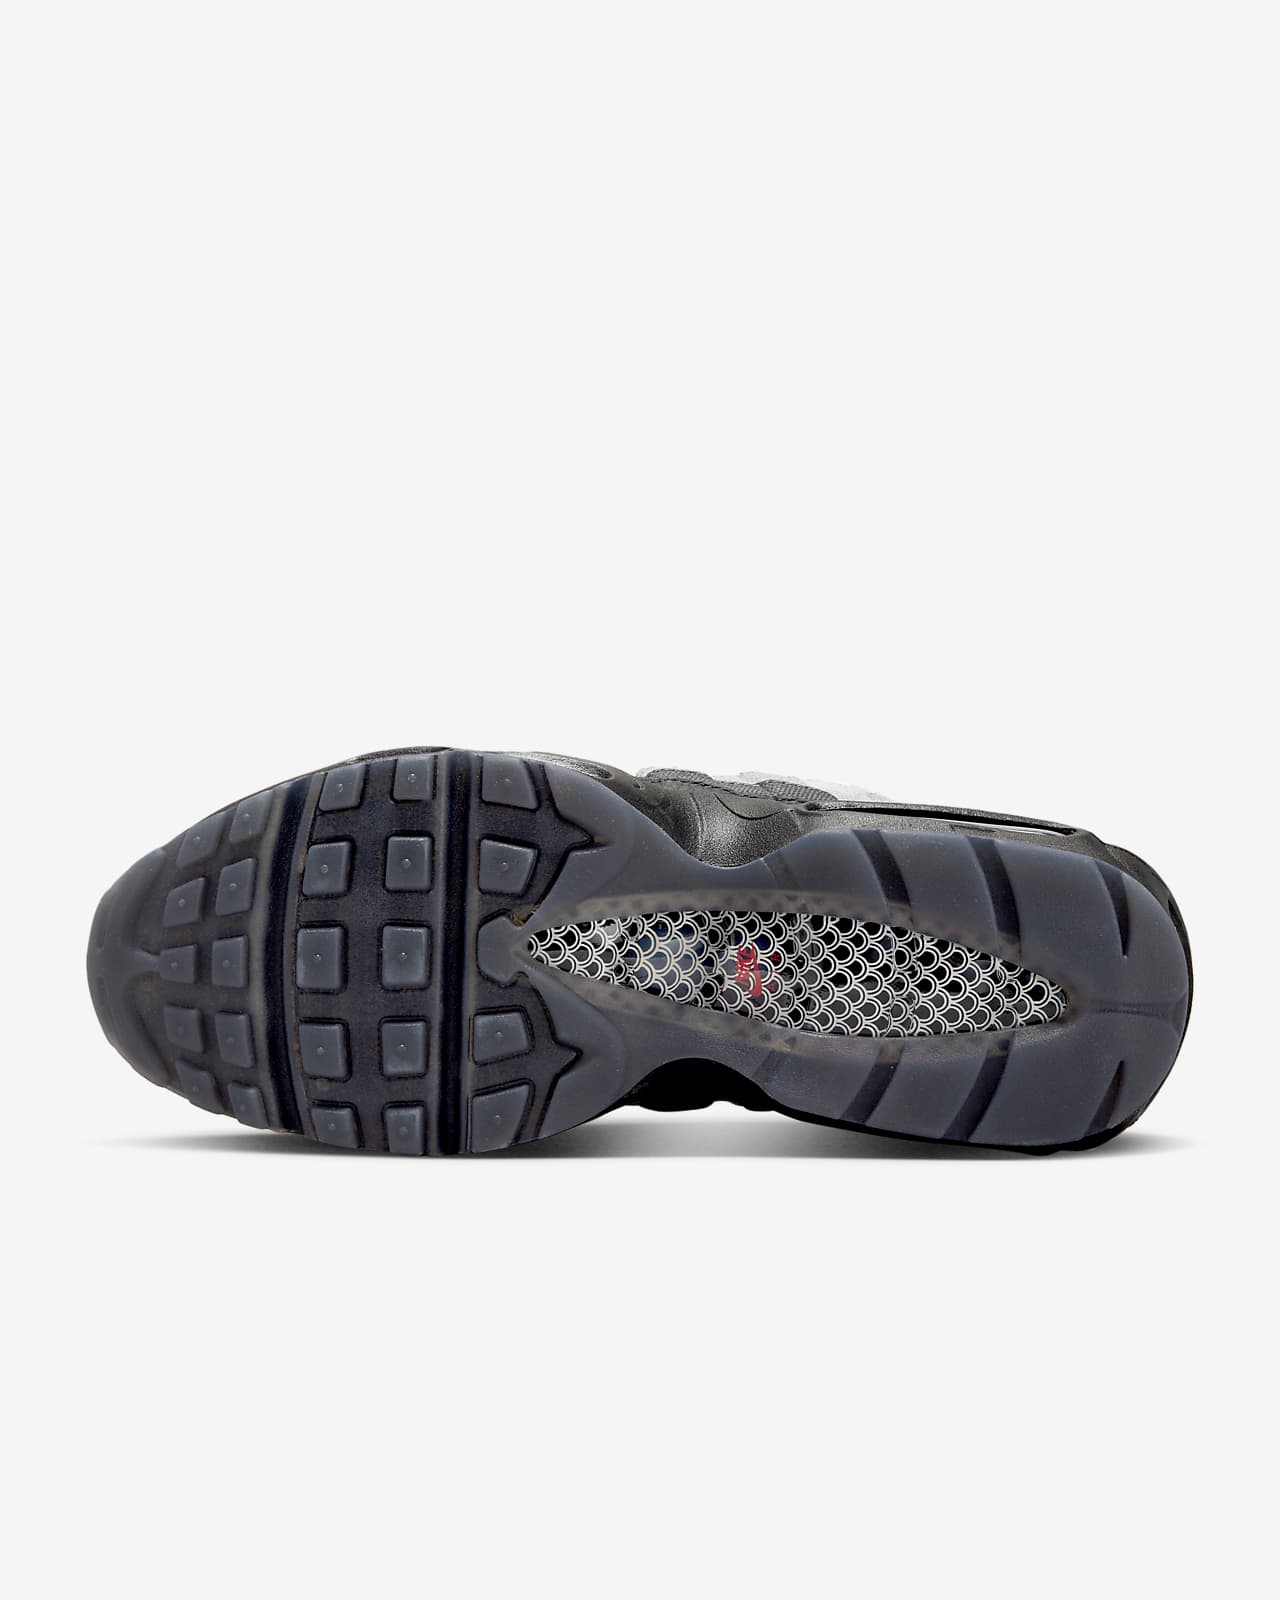 Etna knal patroon Nike Air Max 95 Premium Men's Shoes. Nike.com